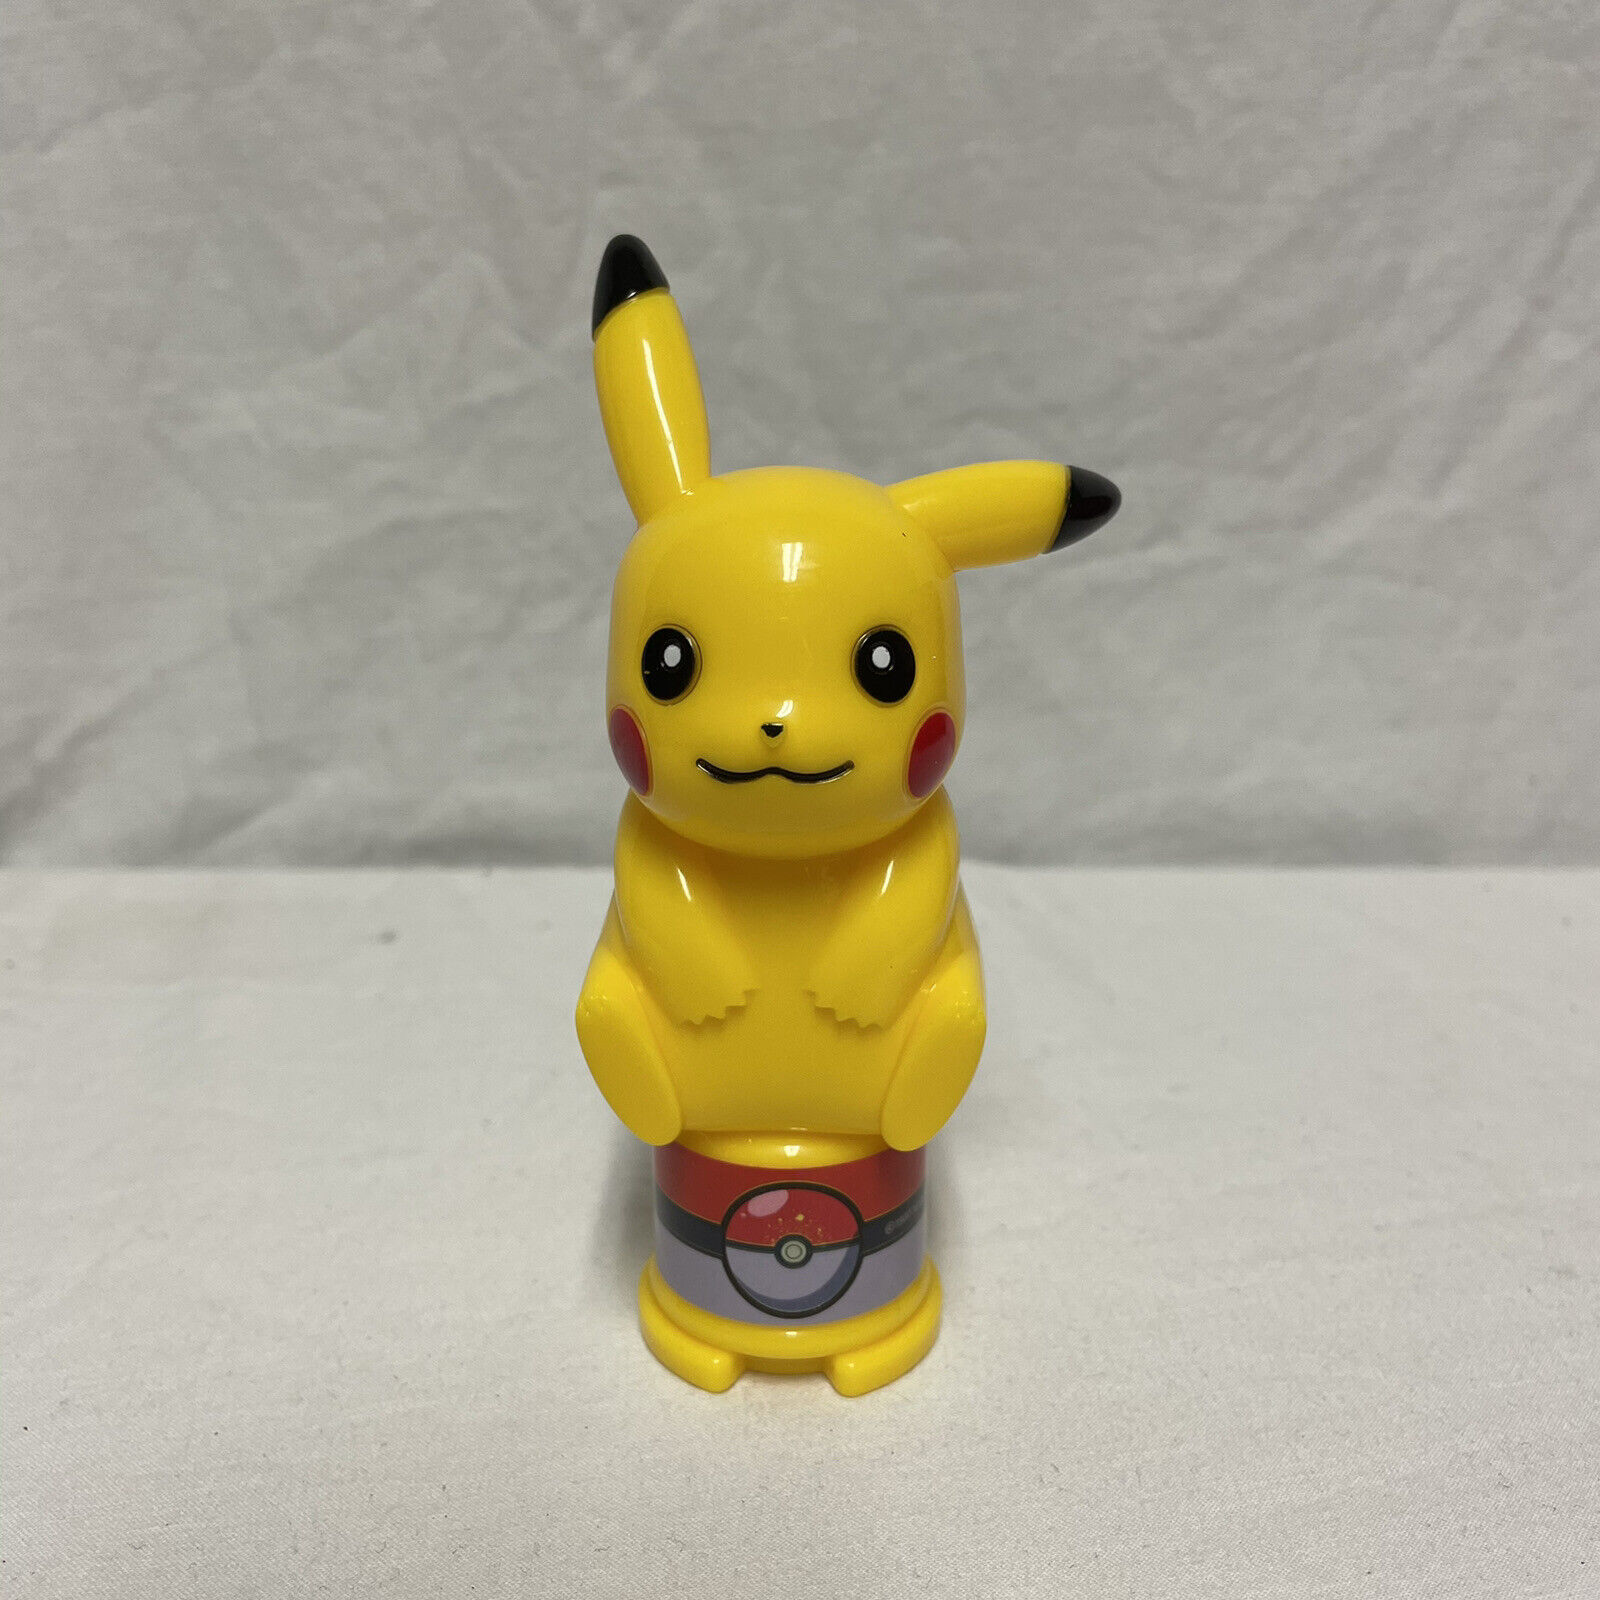 Vintage Pokemon Nintendo Pikachu Figure 1997 5” Plastic Rare Read Description